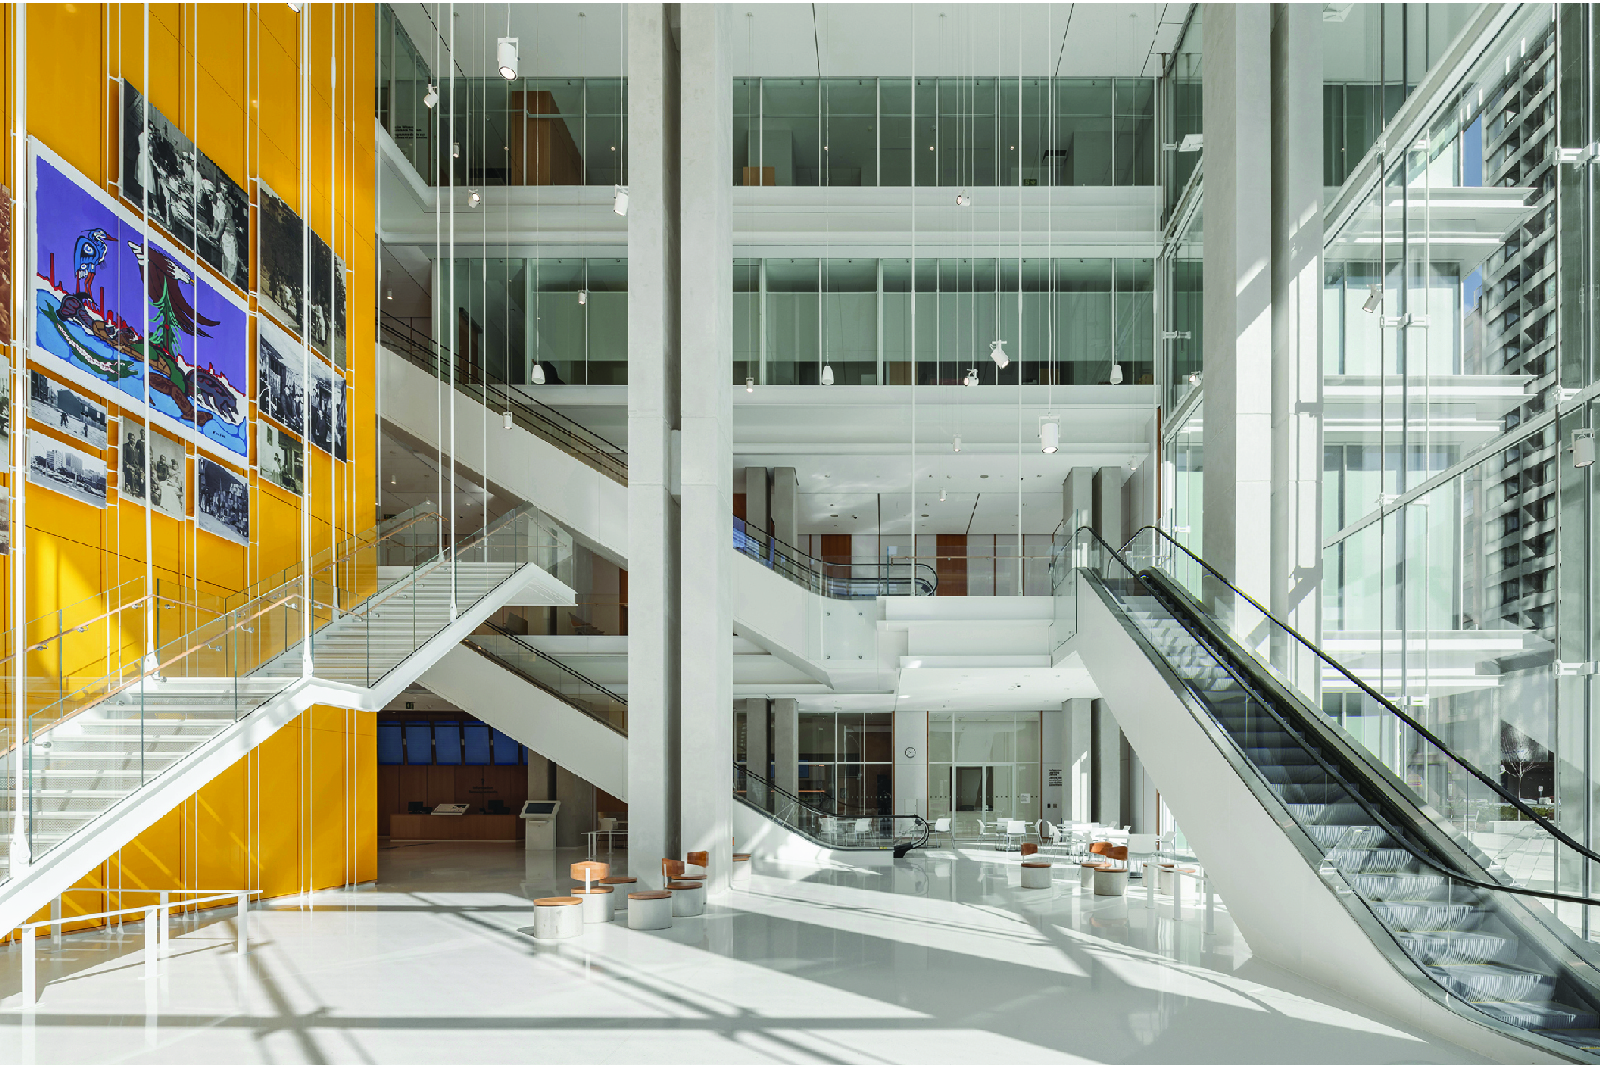 Atrium interior servicing high traffic public floors with yellow quartz clad elevator core and feature images